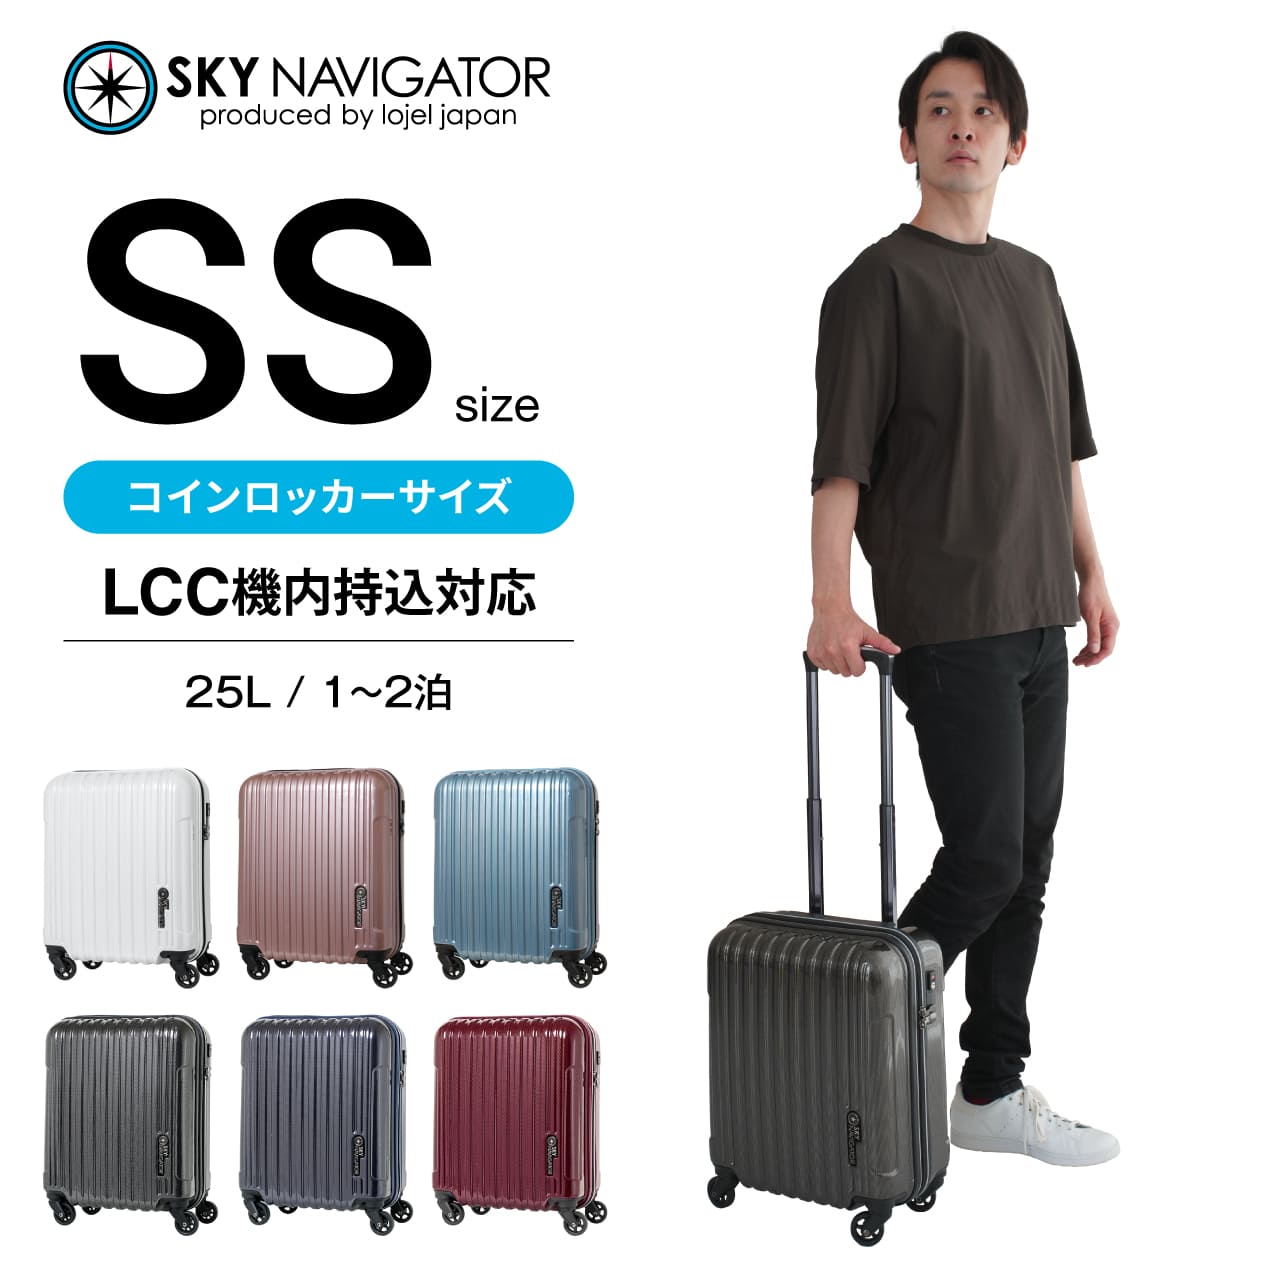 SKYNAVIGATOR スーツケース SSサイズ 機内持ち込み ハードタイプ コインロッカー キャリーケース スカイナビゲーター キャリーバッグ  トランク :SK-0722-41:LOJEL JAPAN ONLINE ヤフー店 - 通販 - Yahoo!ショッピング